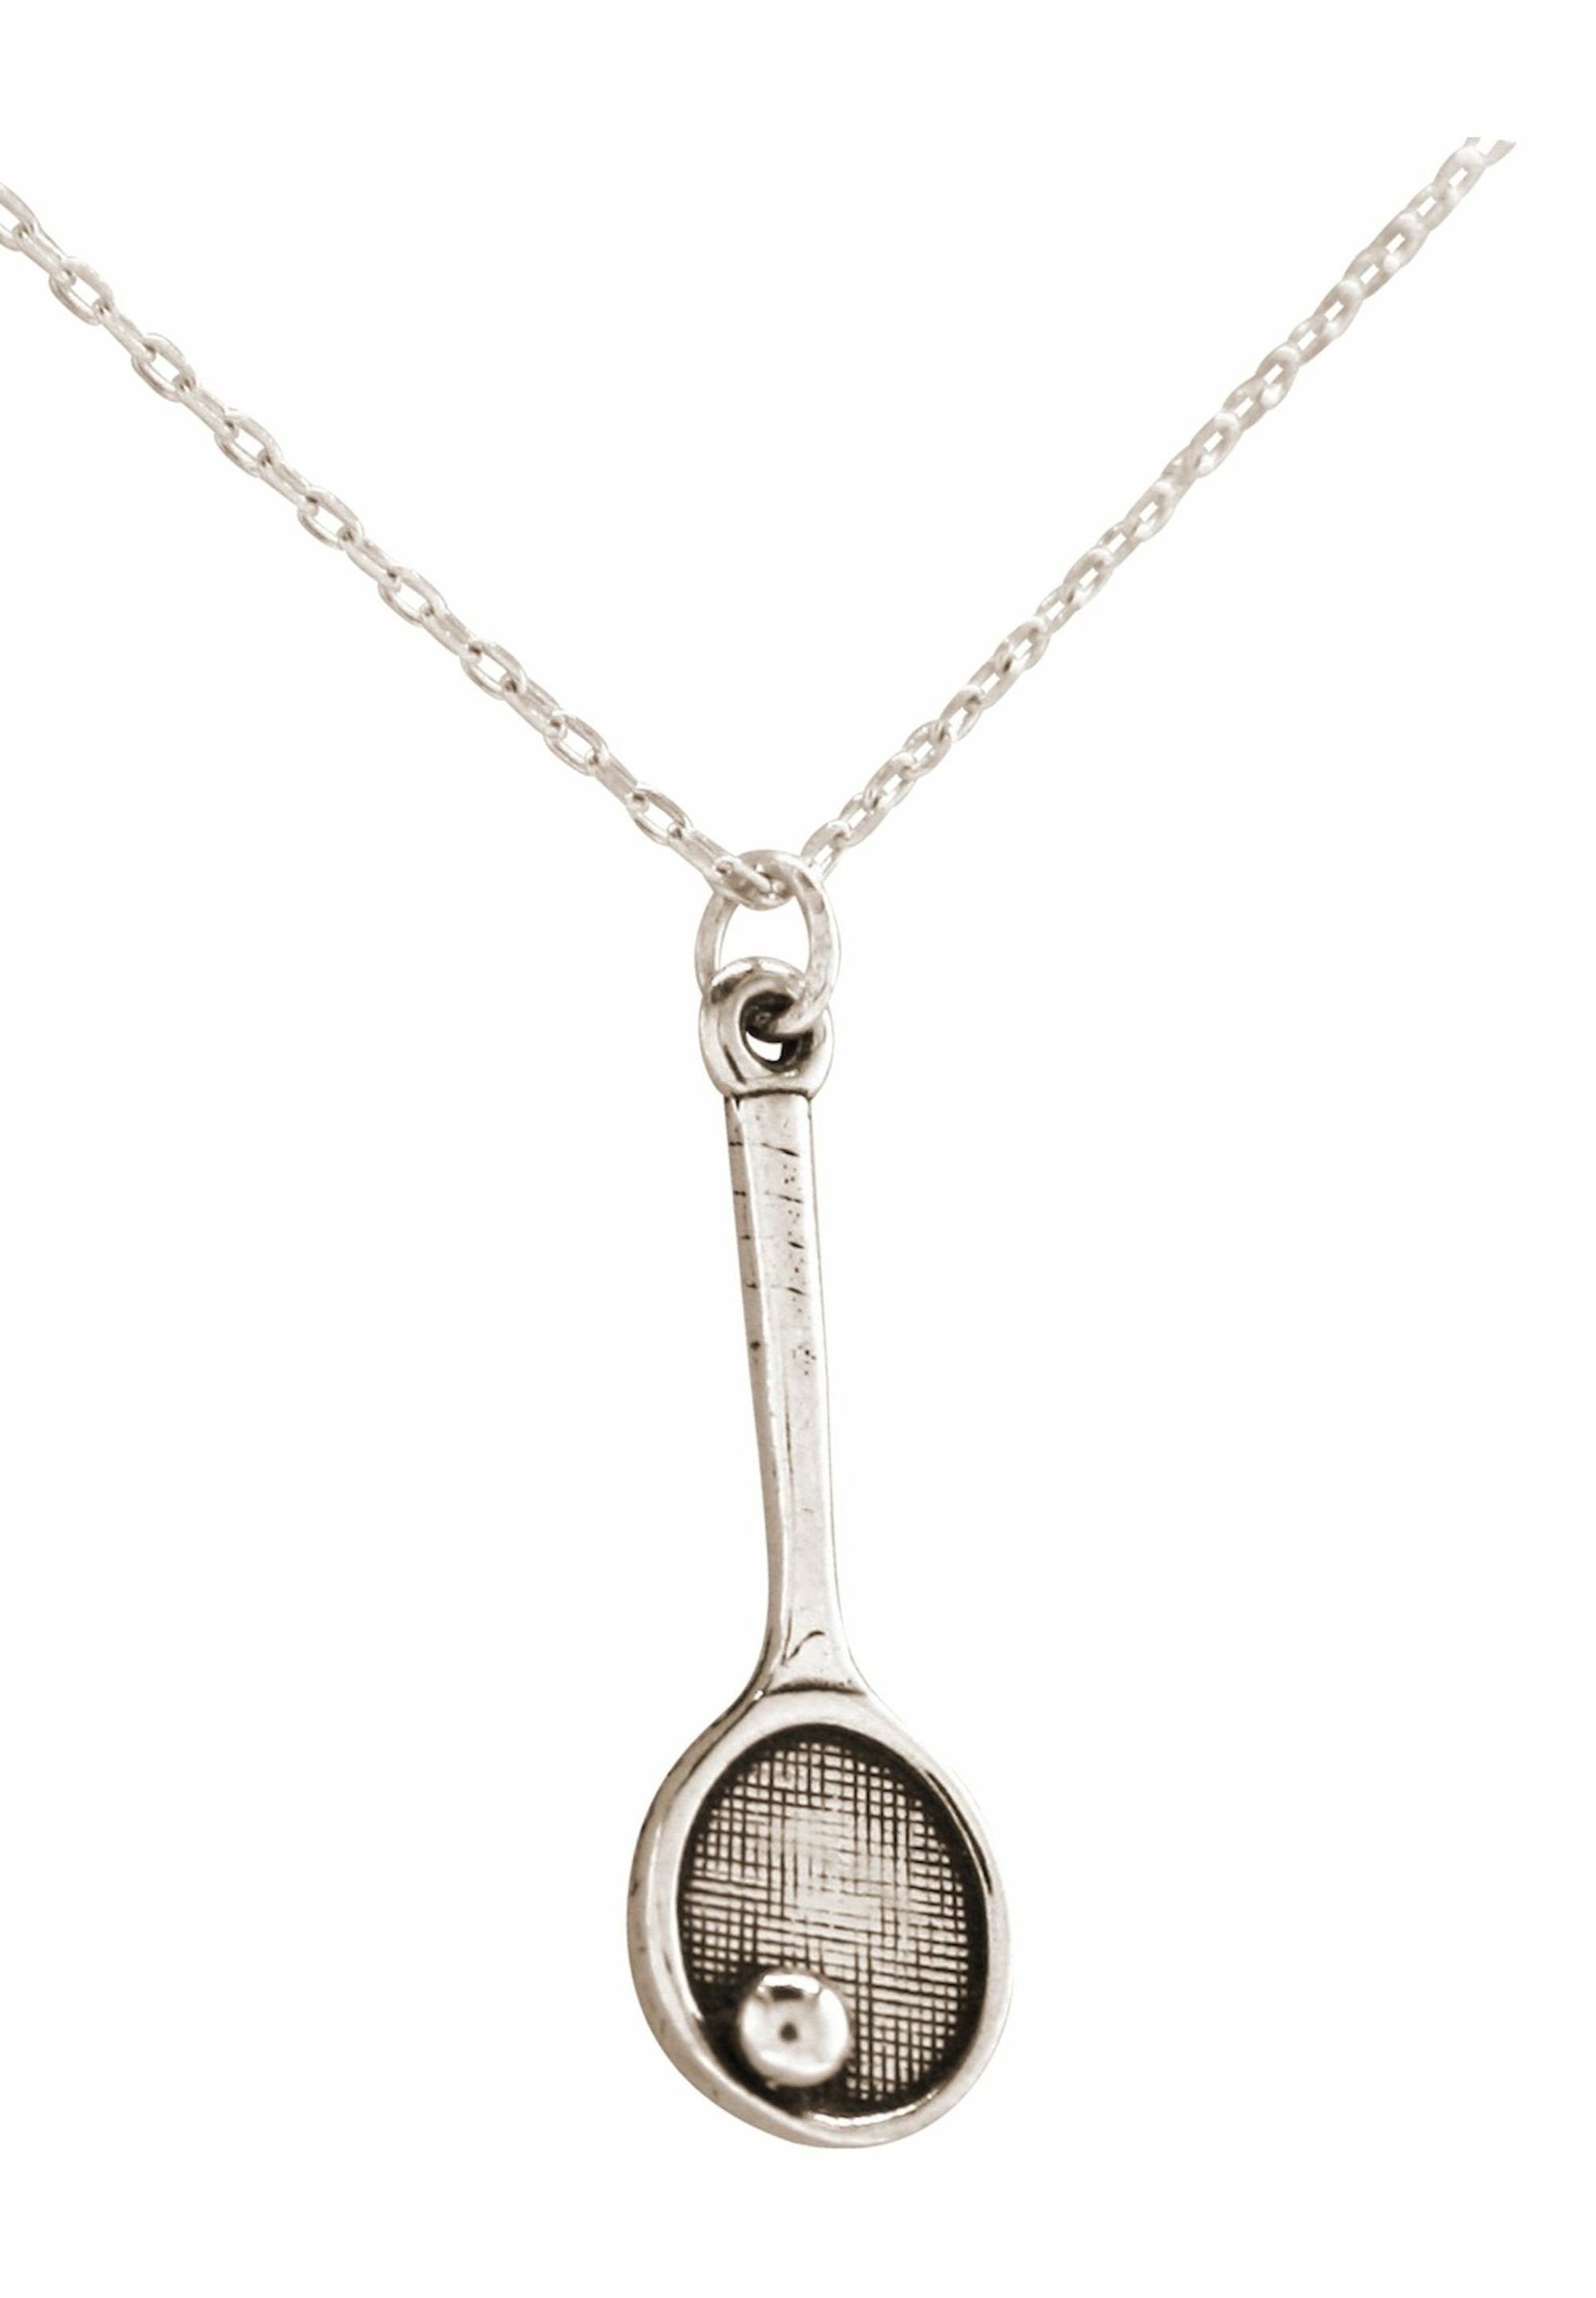 Gemshine Kette mit Anhänger Tennisschläger Ball Sportschmuck coloured silver Racket 